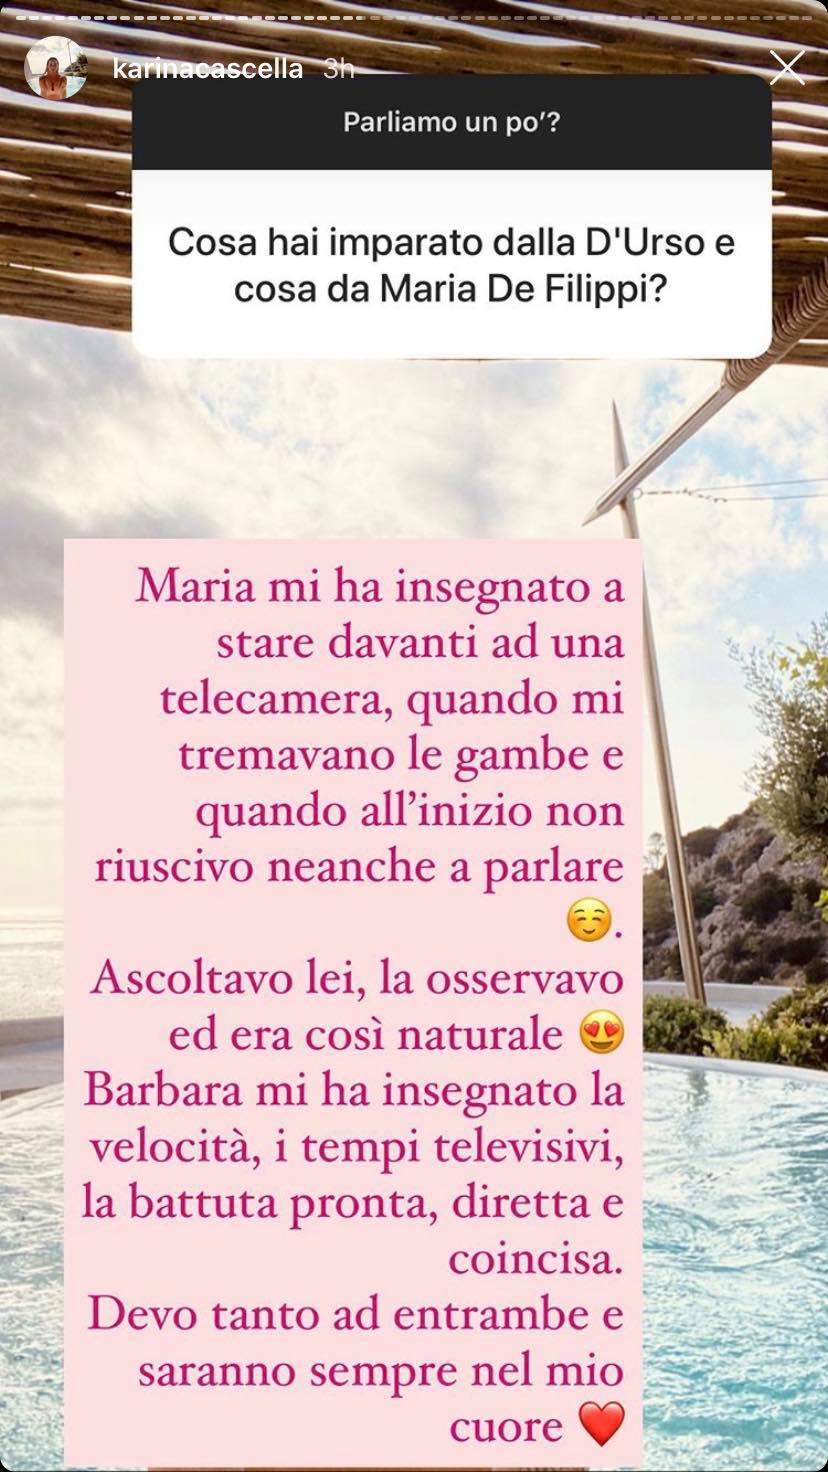 Karina Cascella Barbara D'Urso Maria De Filippi